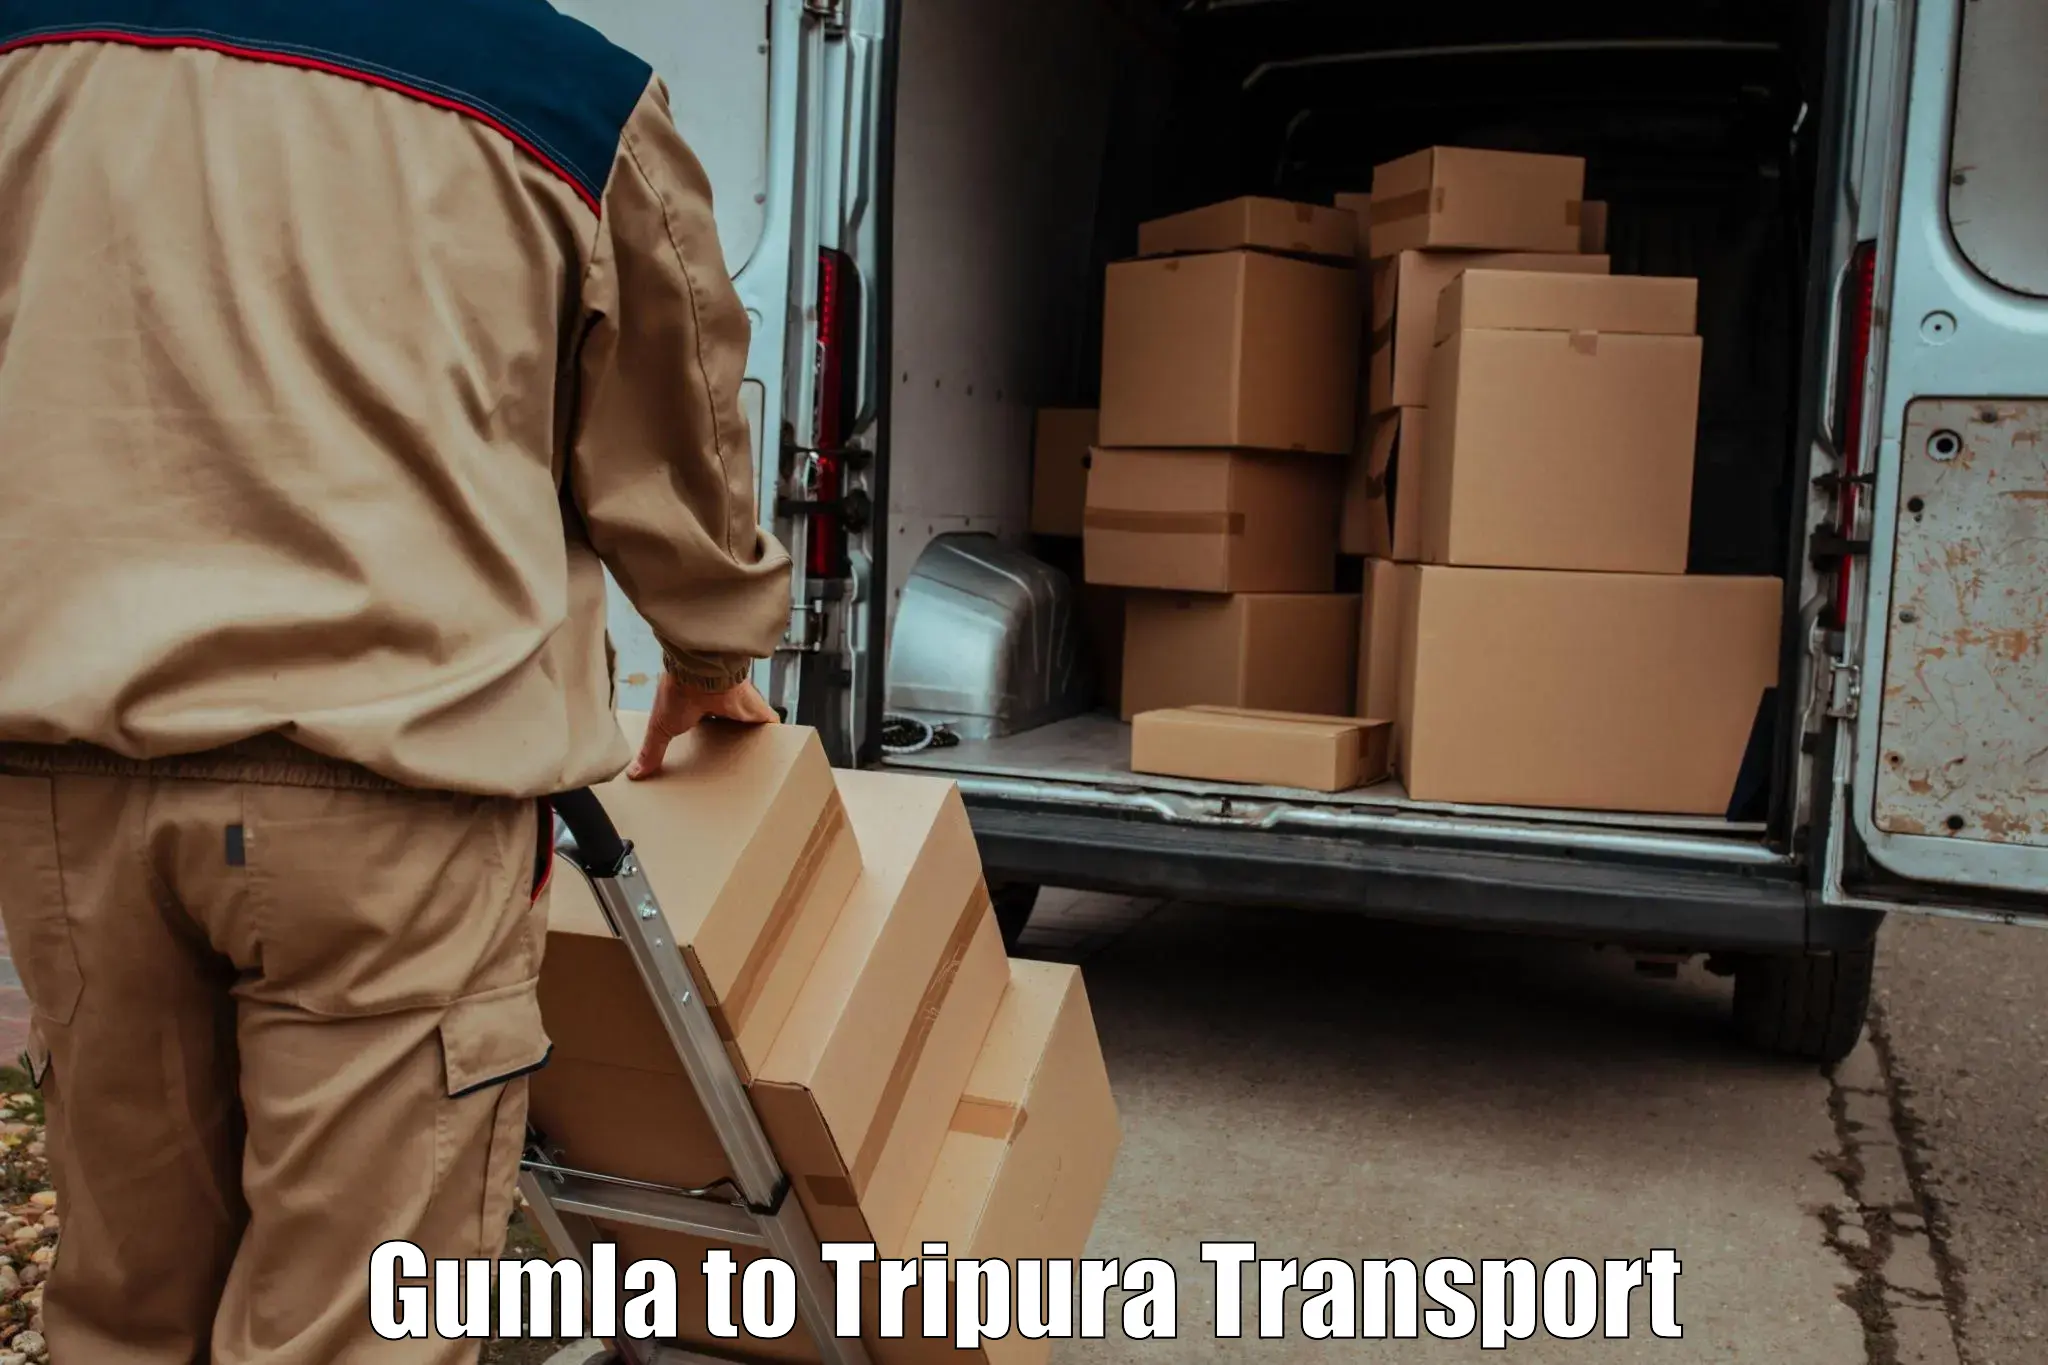 Cargo transportation services Gumla to Bishalgarh